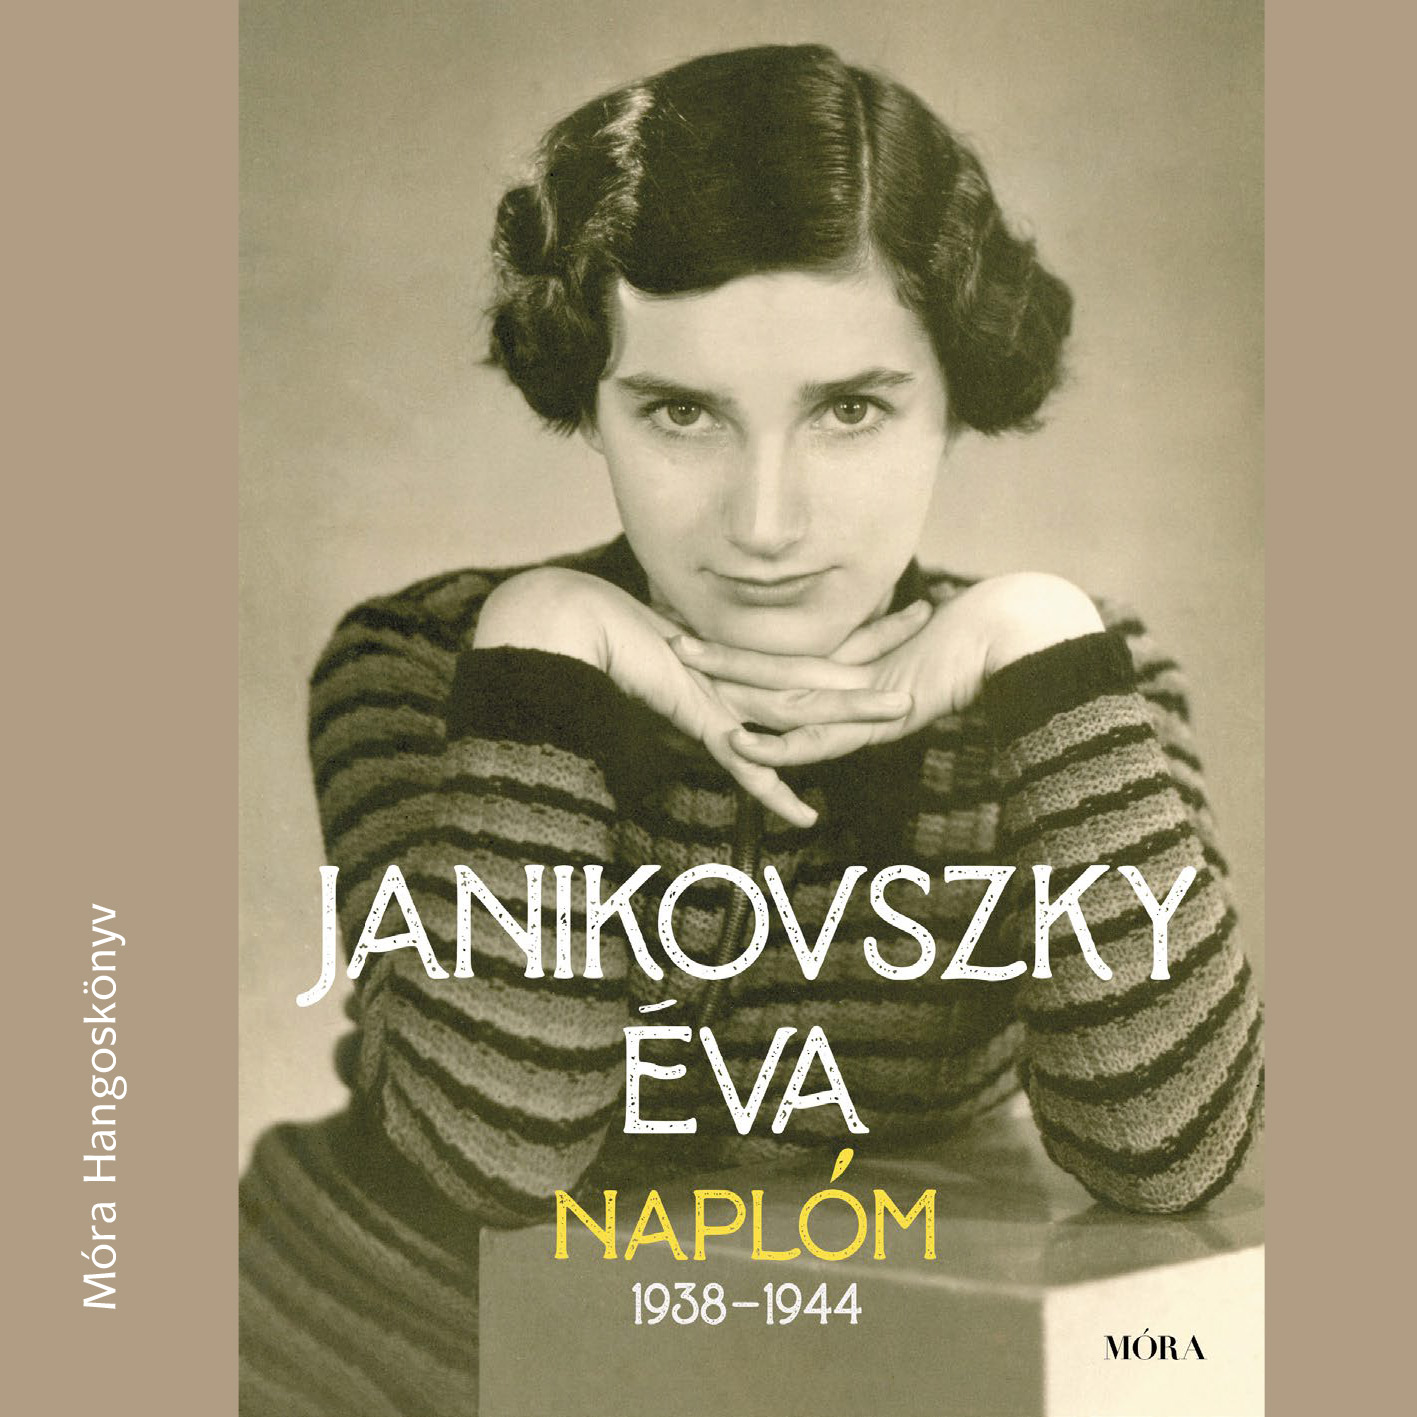 Janikovszky Éva - Naplóm, 1938-1944 - Hangjáték az azonos című könyv alapján [eHangoskönyv]